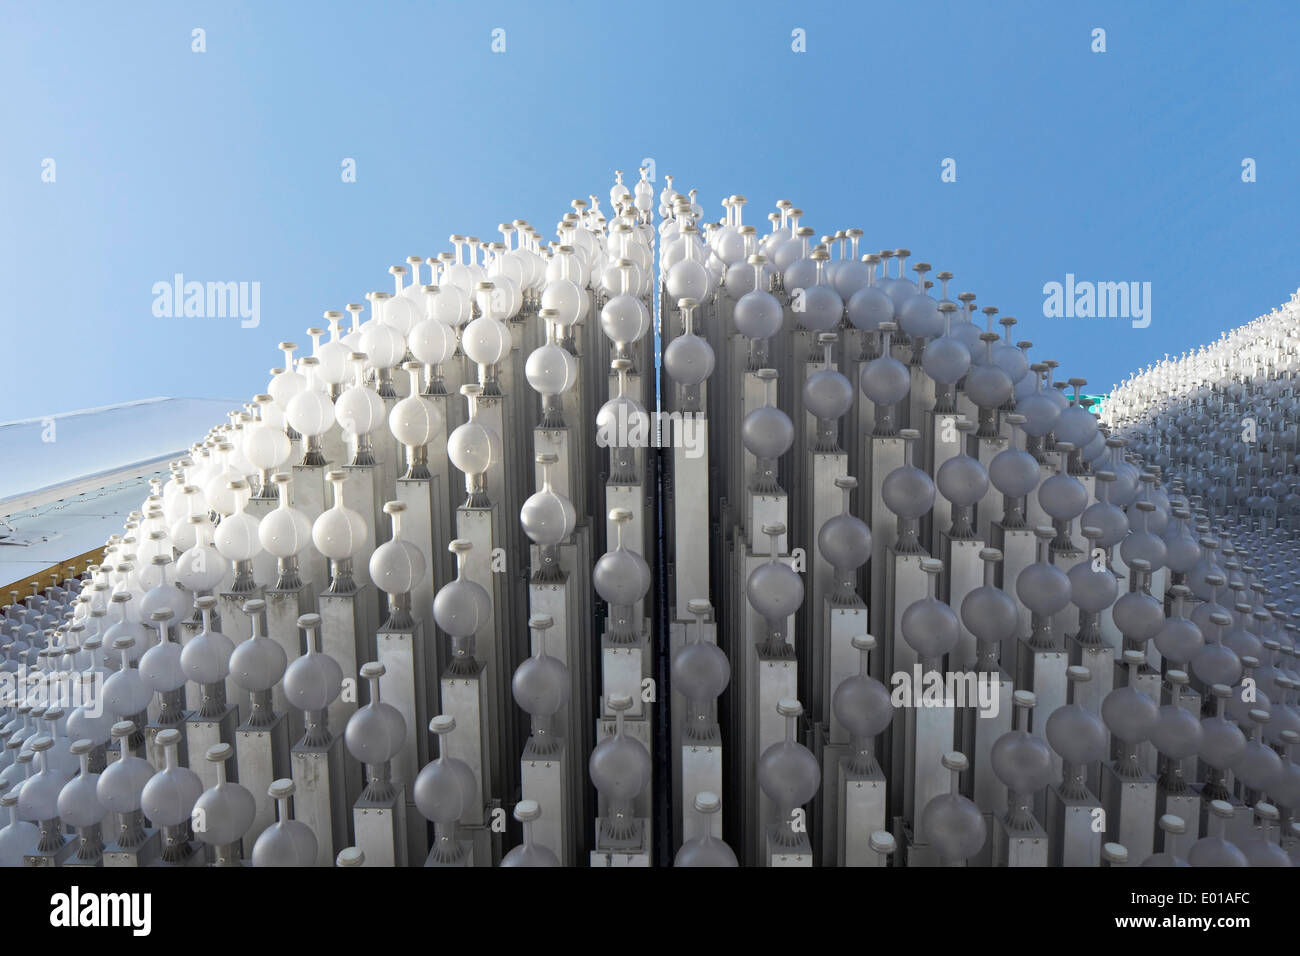 MegaFon, Sotchi 2014, Jeux Olympiques d'hiver de Sotchi, en Russie. Architecte : Asif Khan, 2014. Détail de la surface face à trois dimensions. Banque D'Images